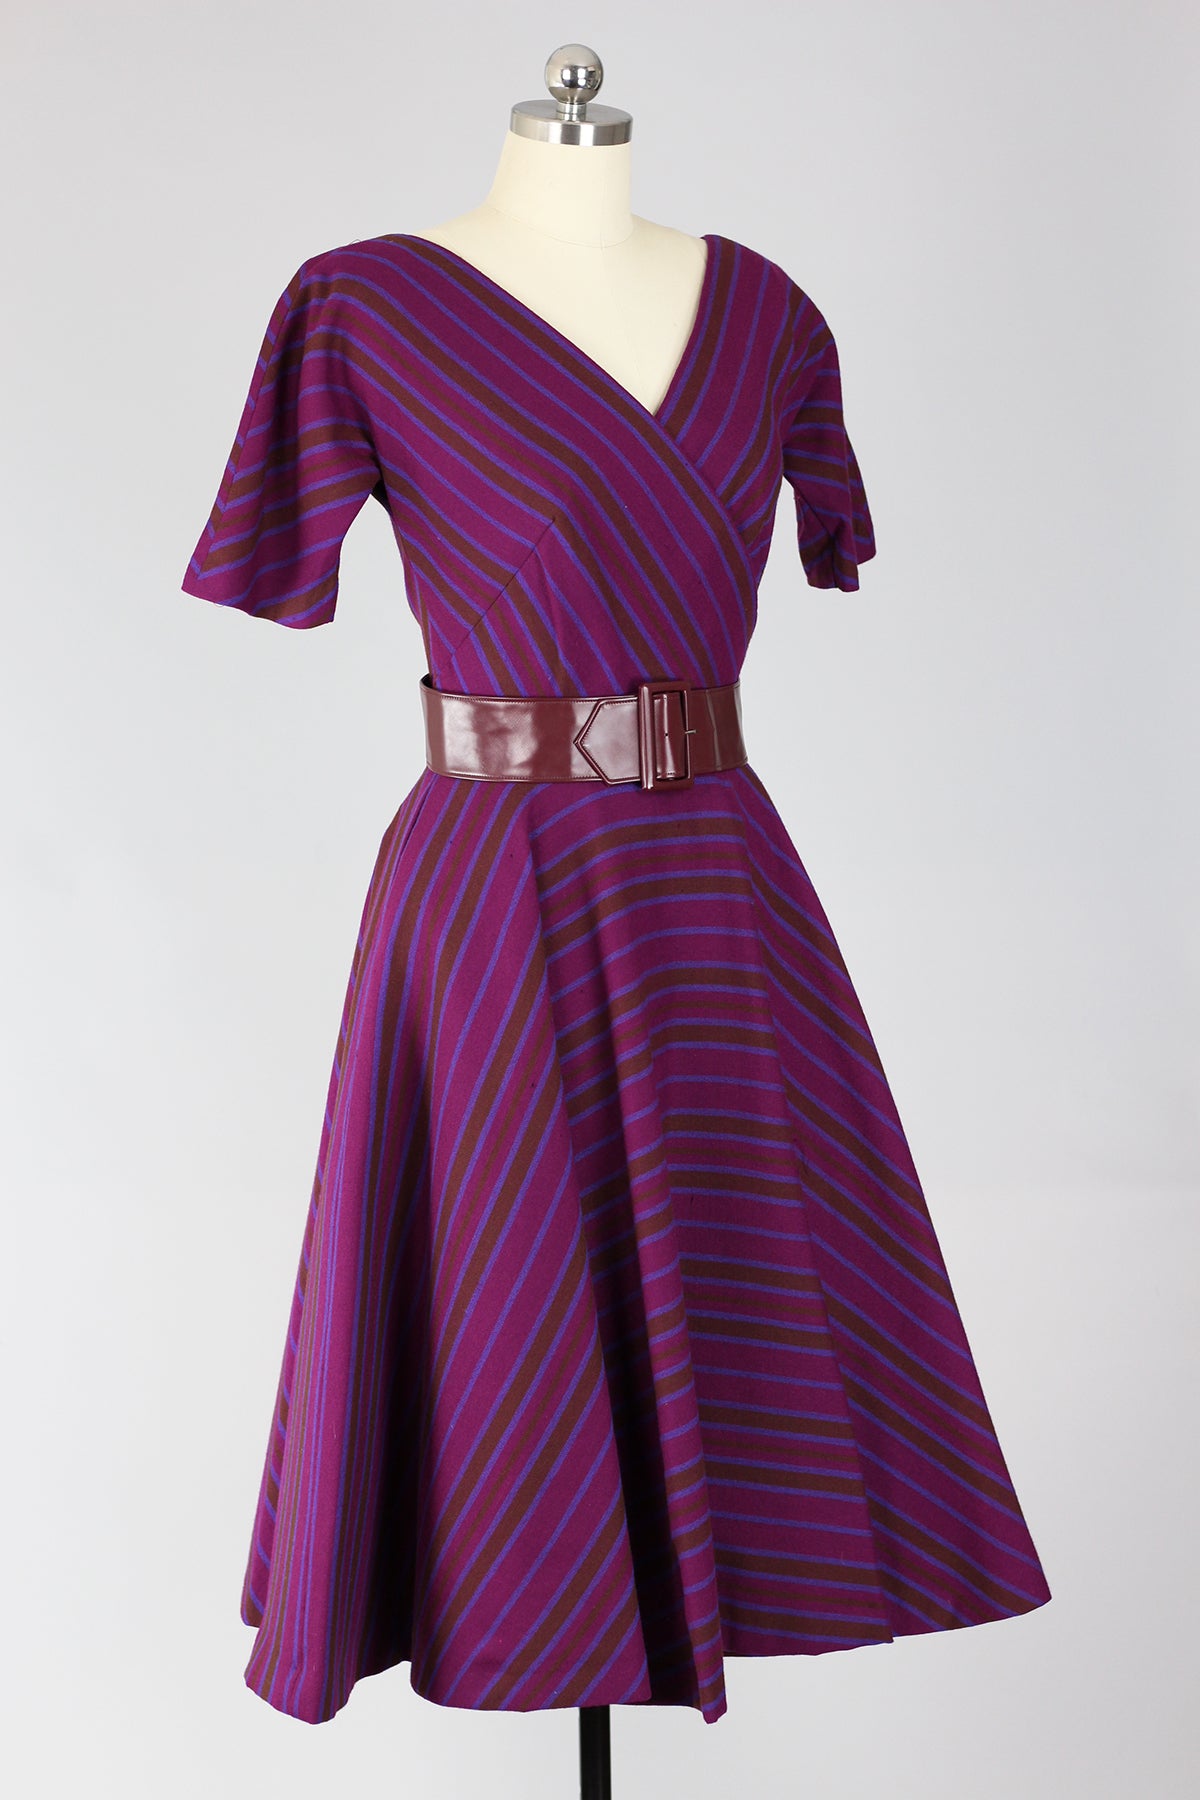 RARE! Incredible Mr. Mort 1950s New Look Plum Wool Stripe Dress